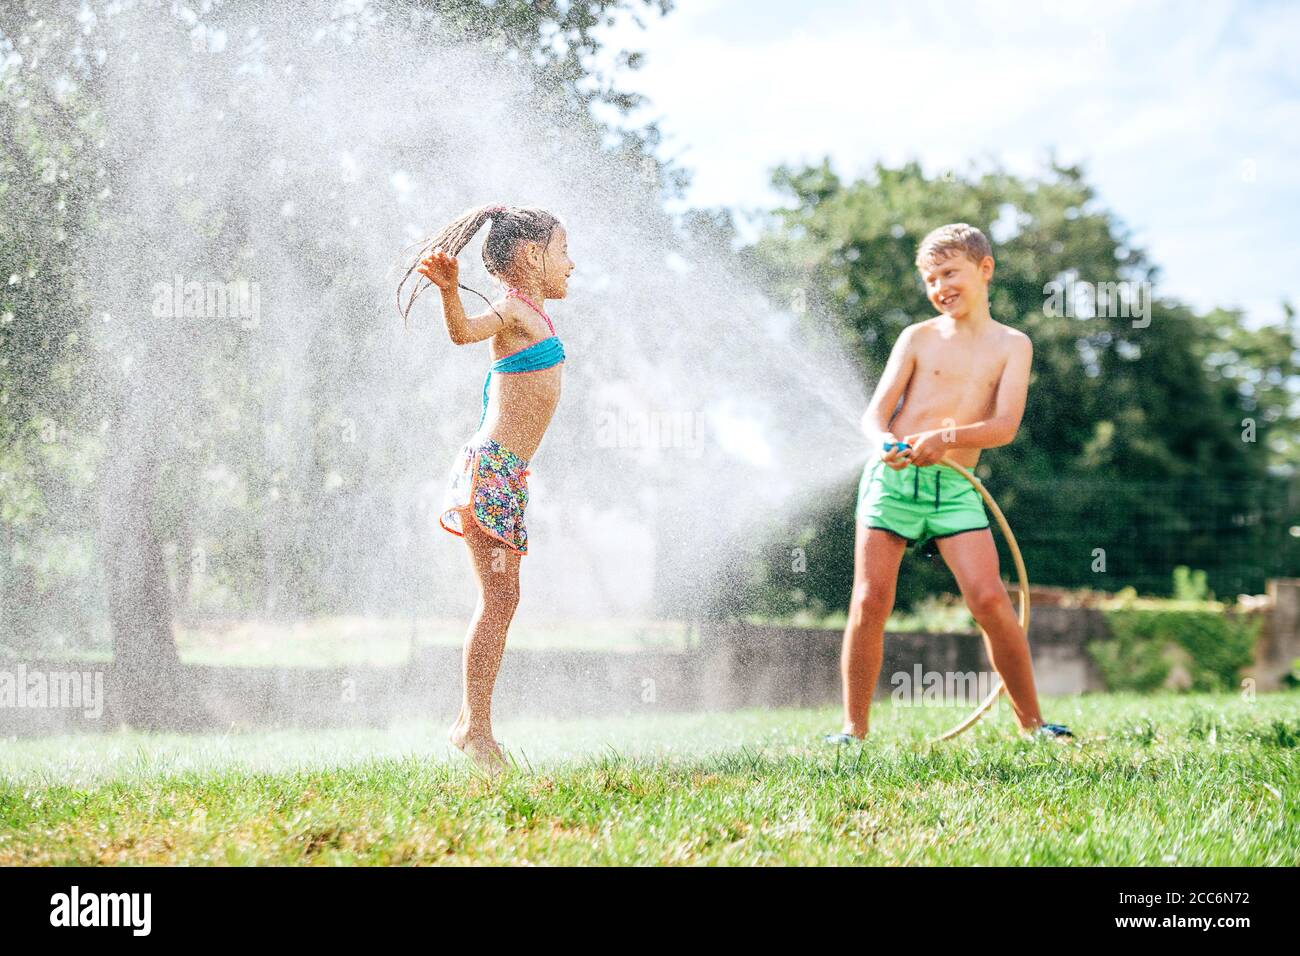 Fratello e sorella giocano insieme con il tubo di irrigazione in giardino Foto Stock